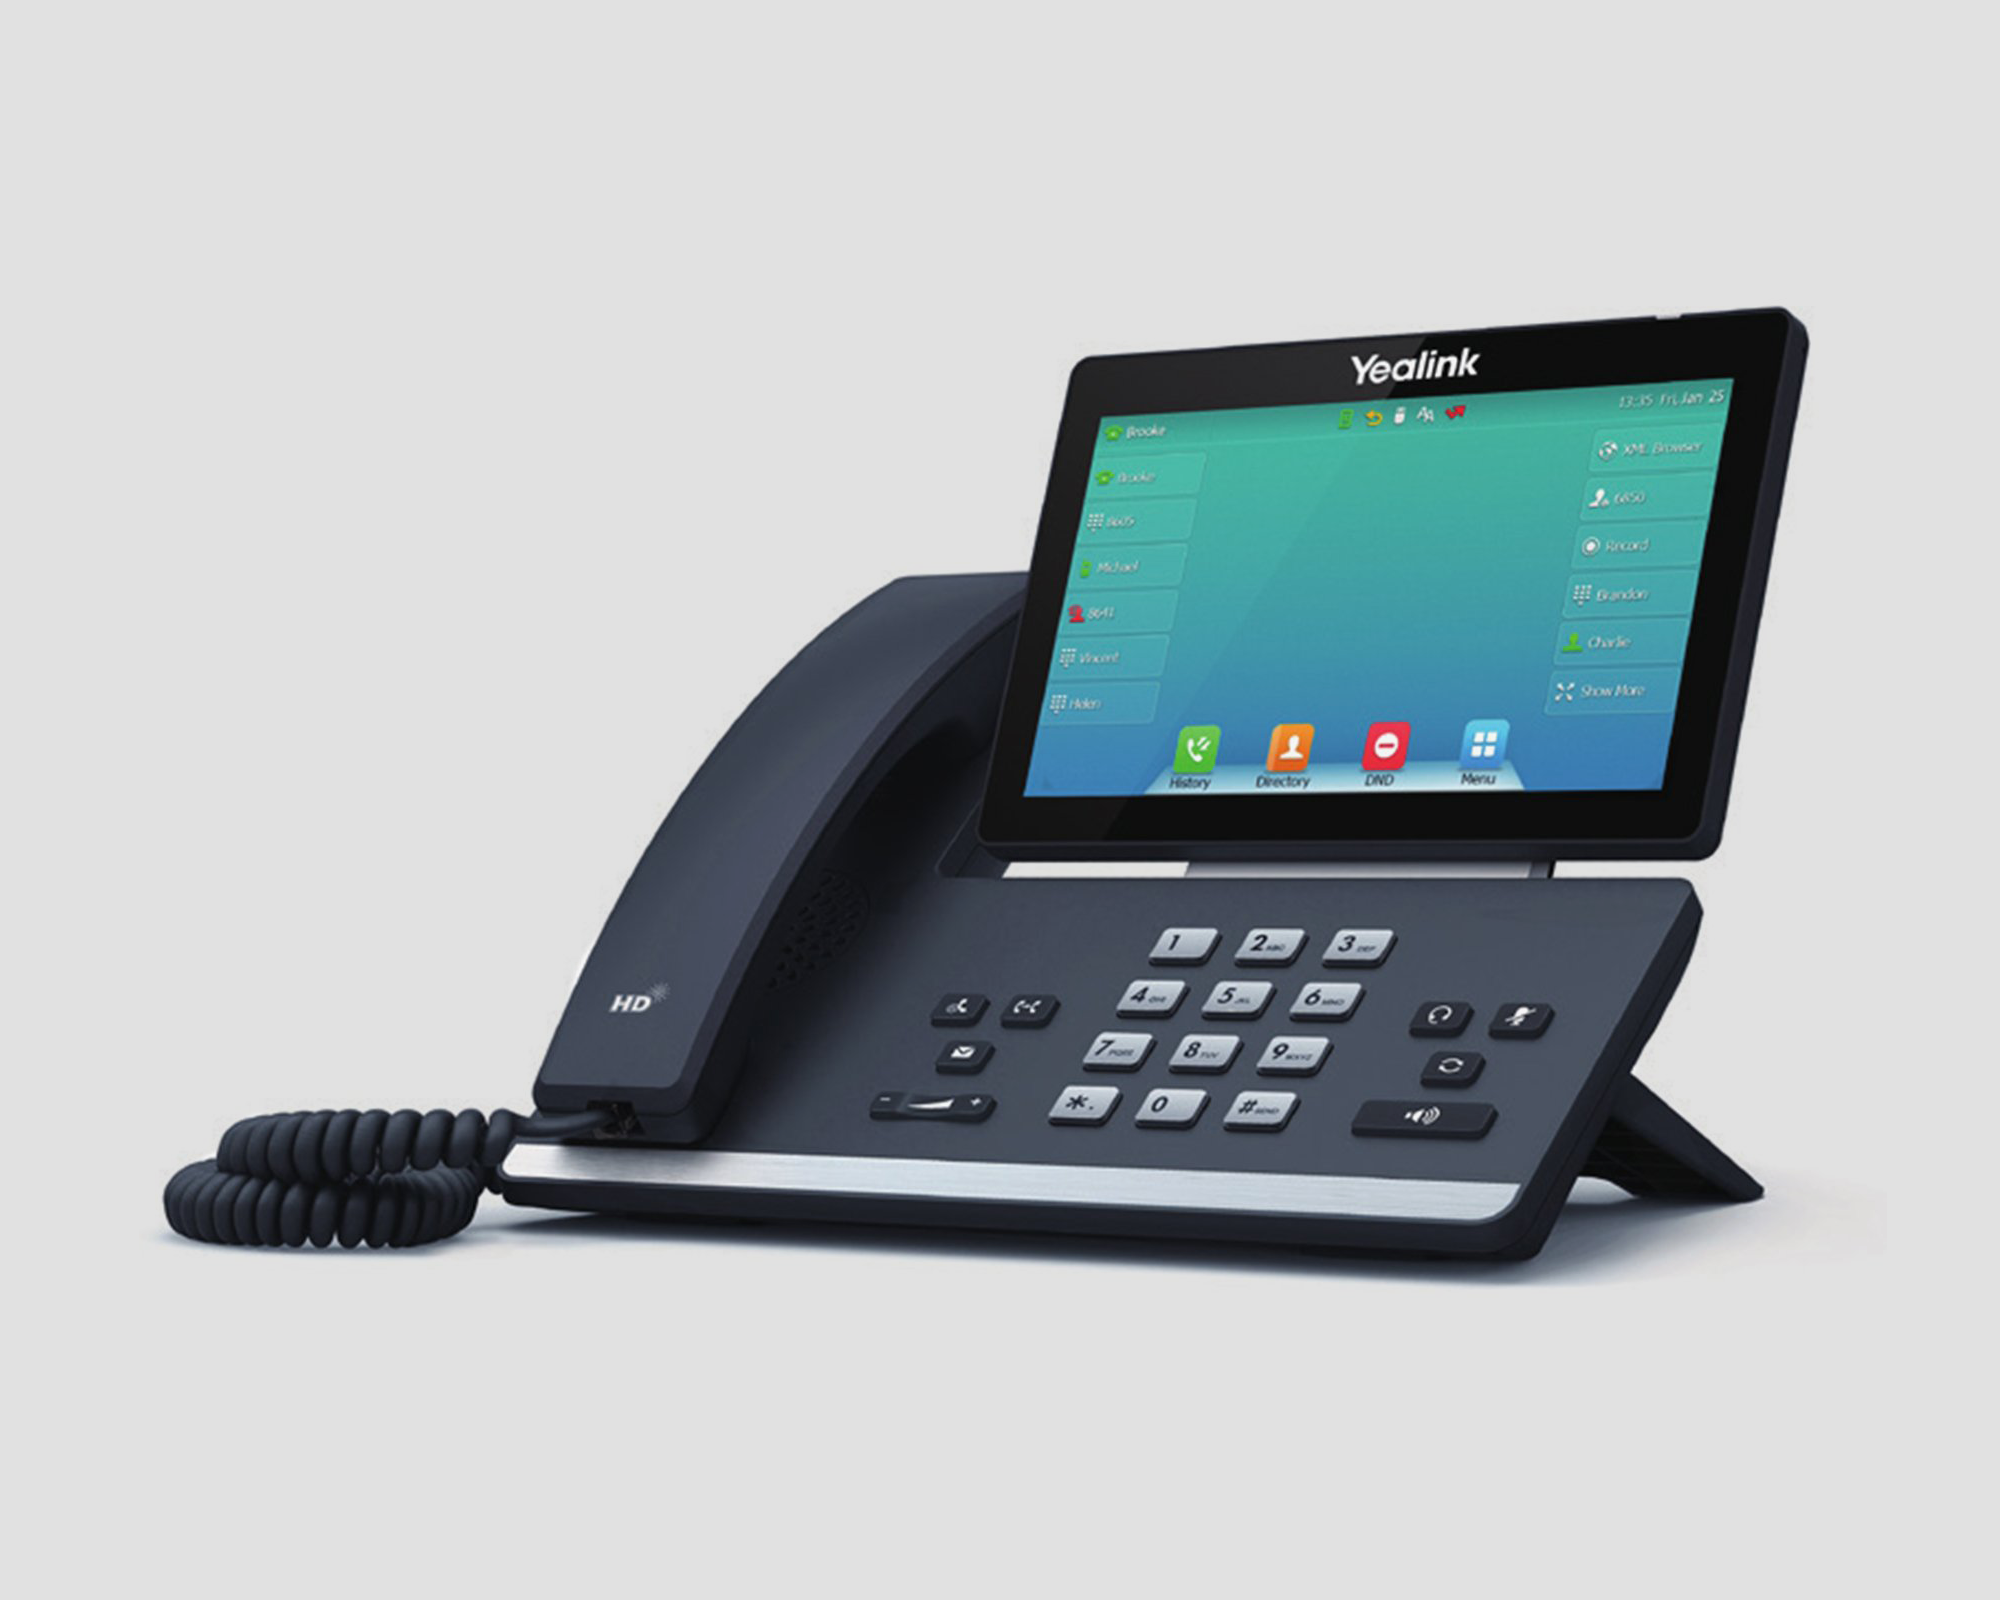 Yealink T57W desktop phone for Tierzero